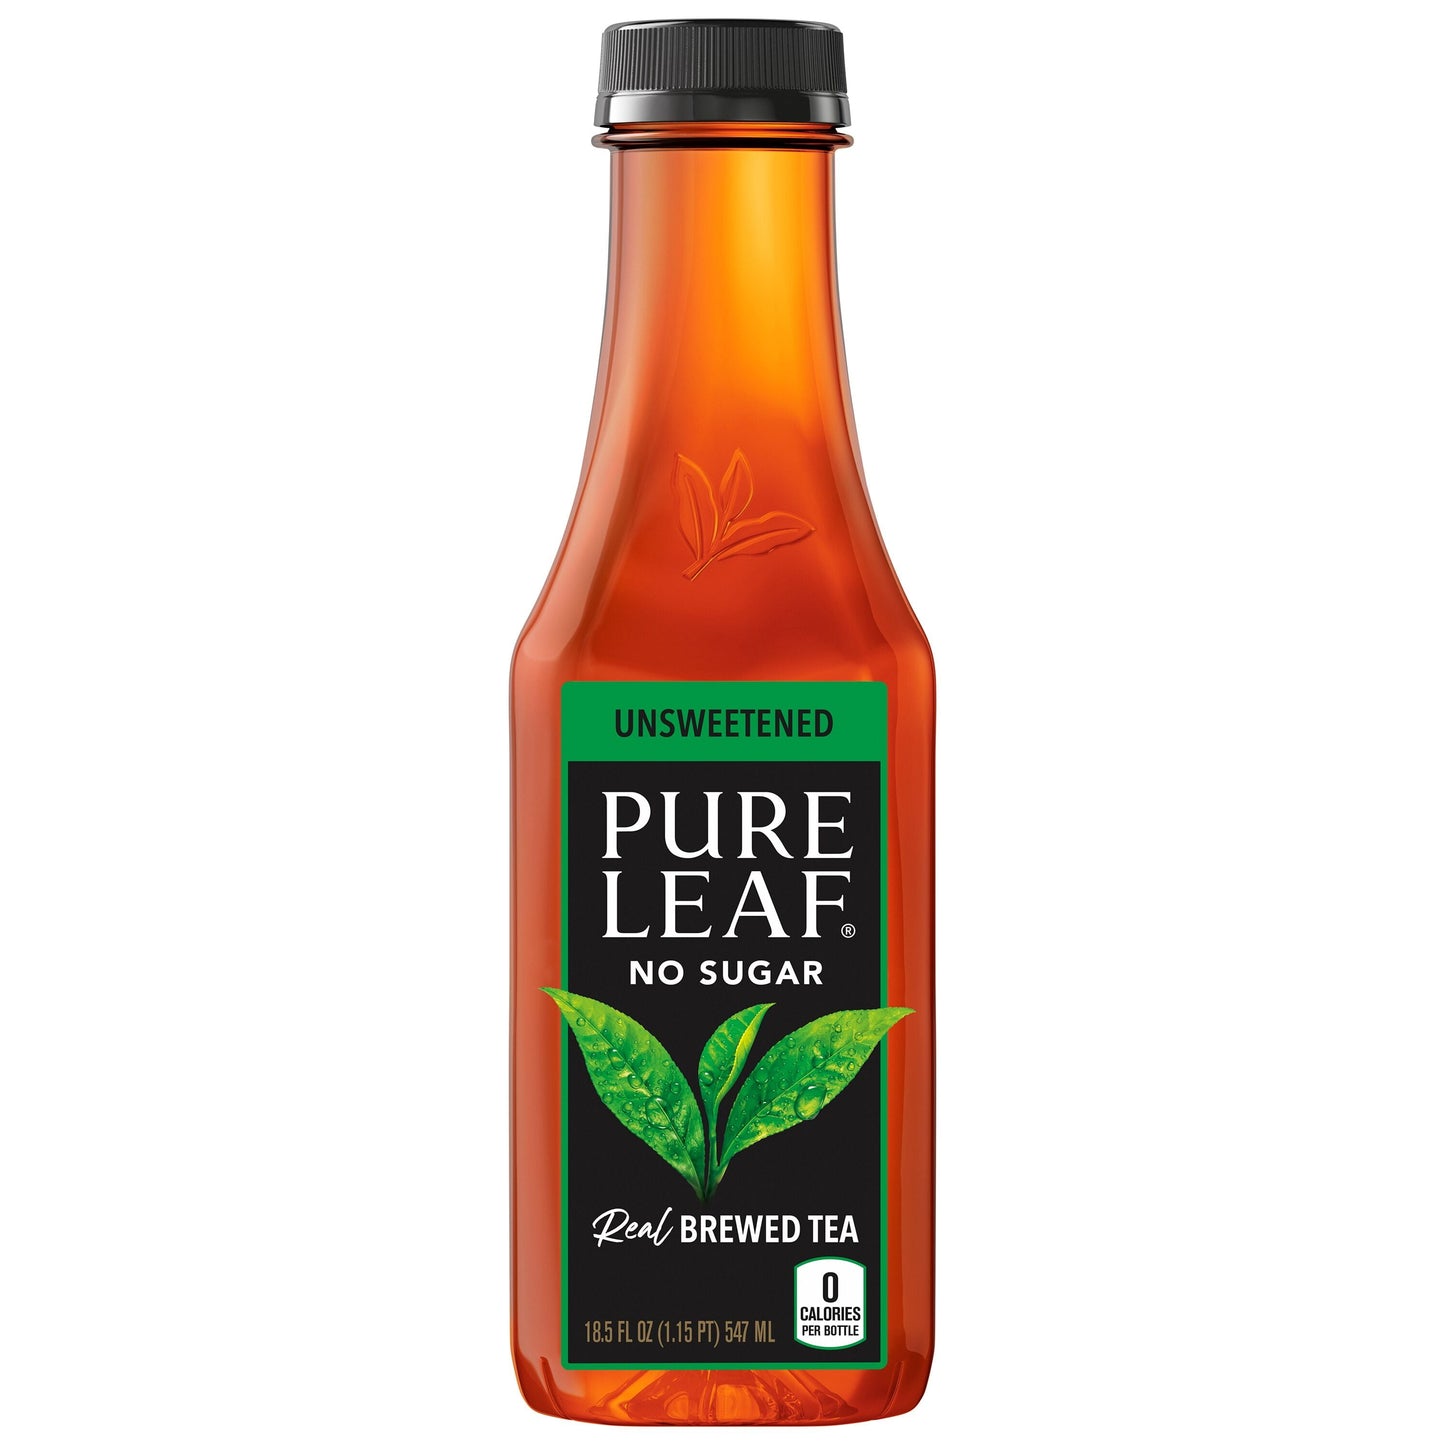 Pure Leaf Unsweetened Black Tea Real Brewed Iced Tea 18.5 oz Bottle